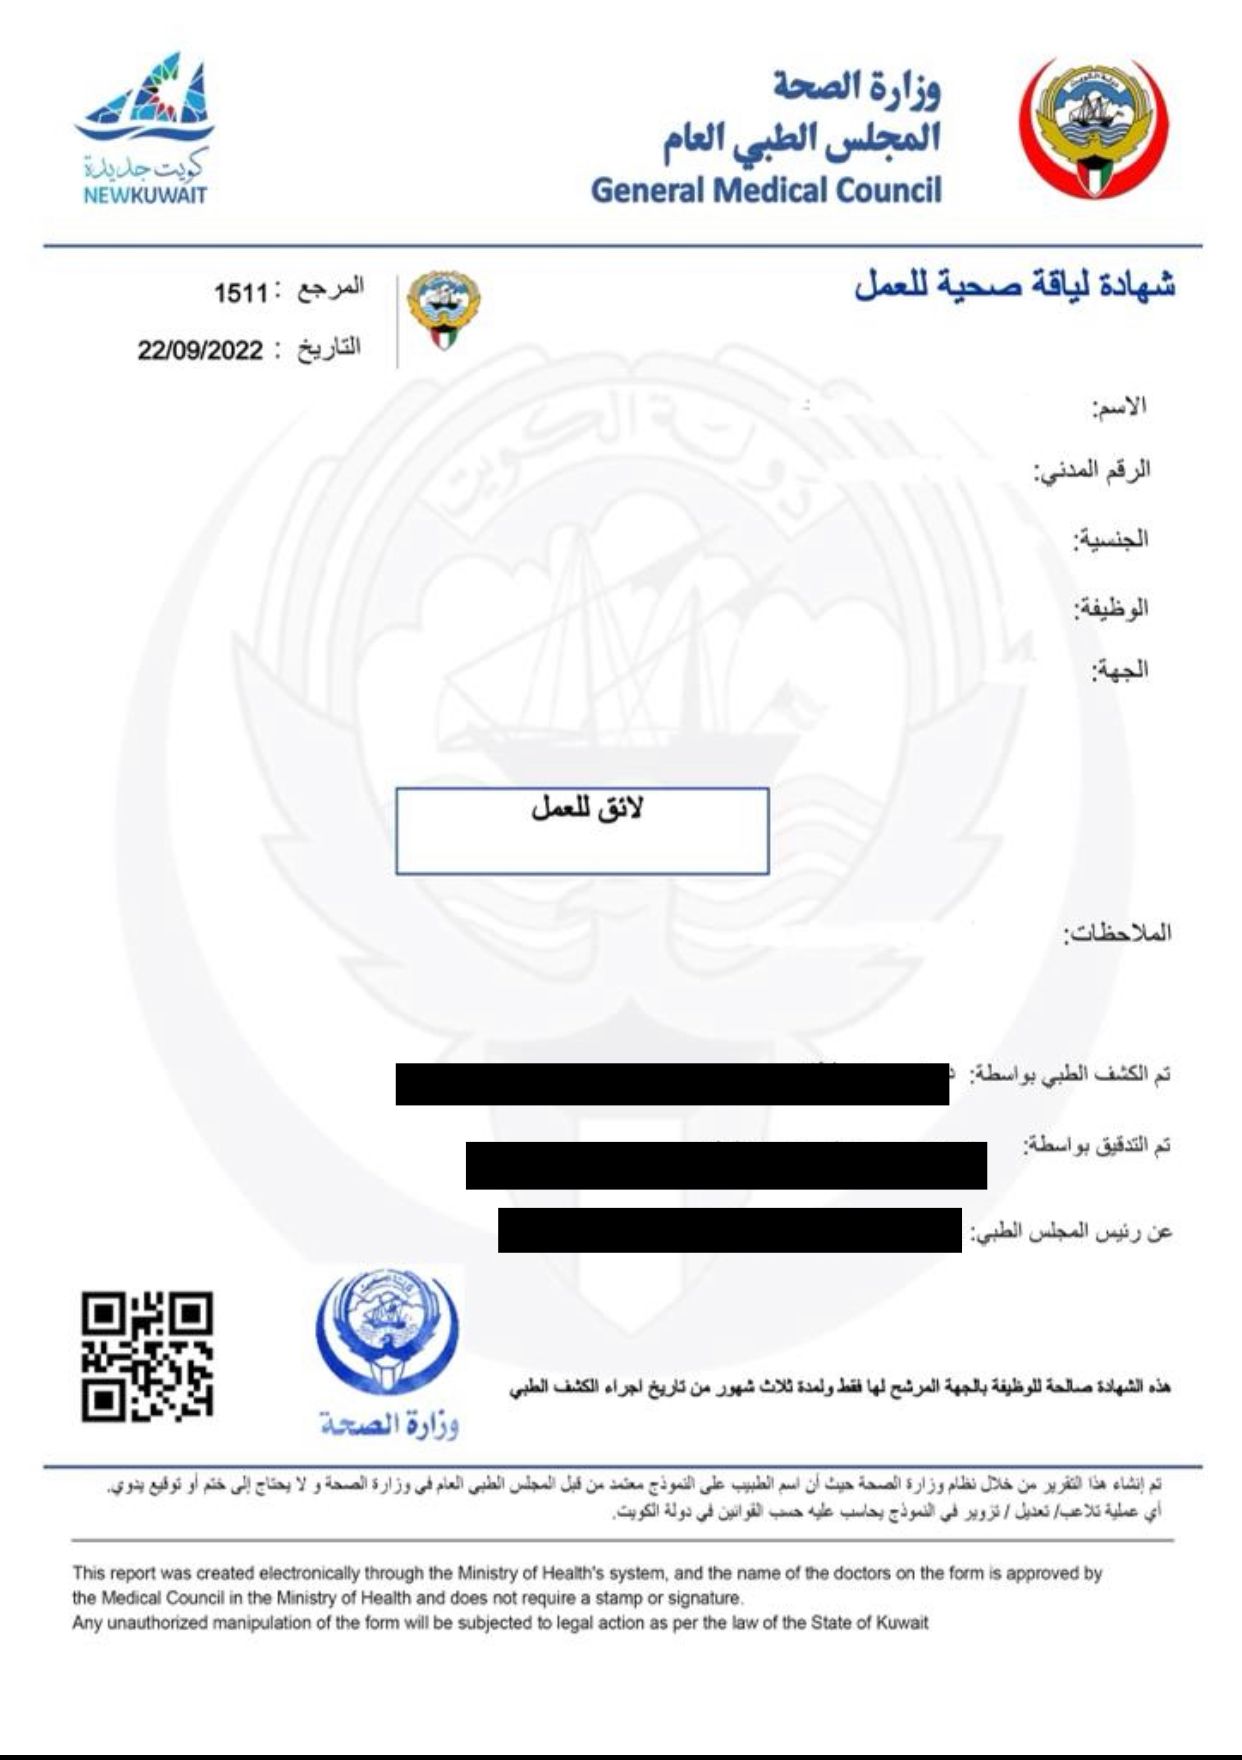 وزارة الصحة: اضافة خدمة استلام شهادة اللياقة الصحية الإلكترونية عبر تطبيق (سهل)                                                                                                                                                                           